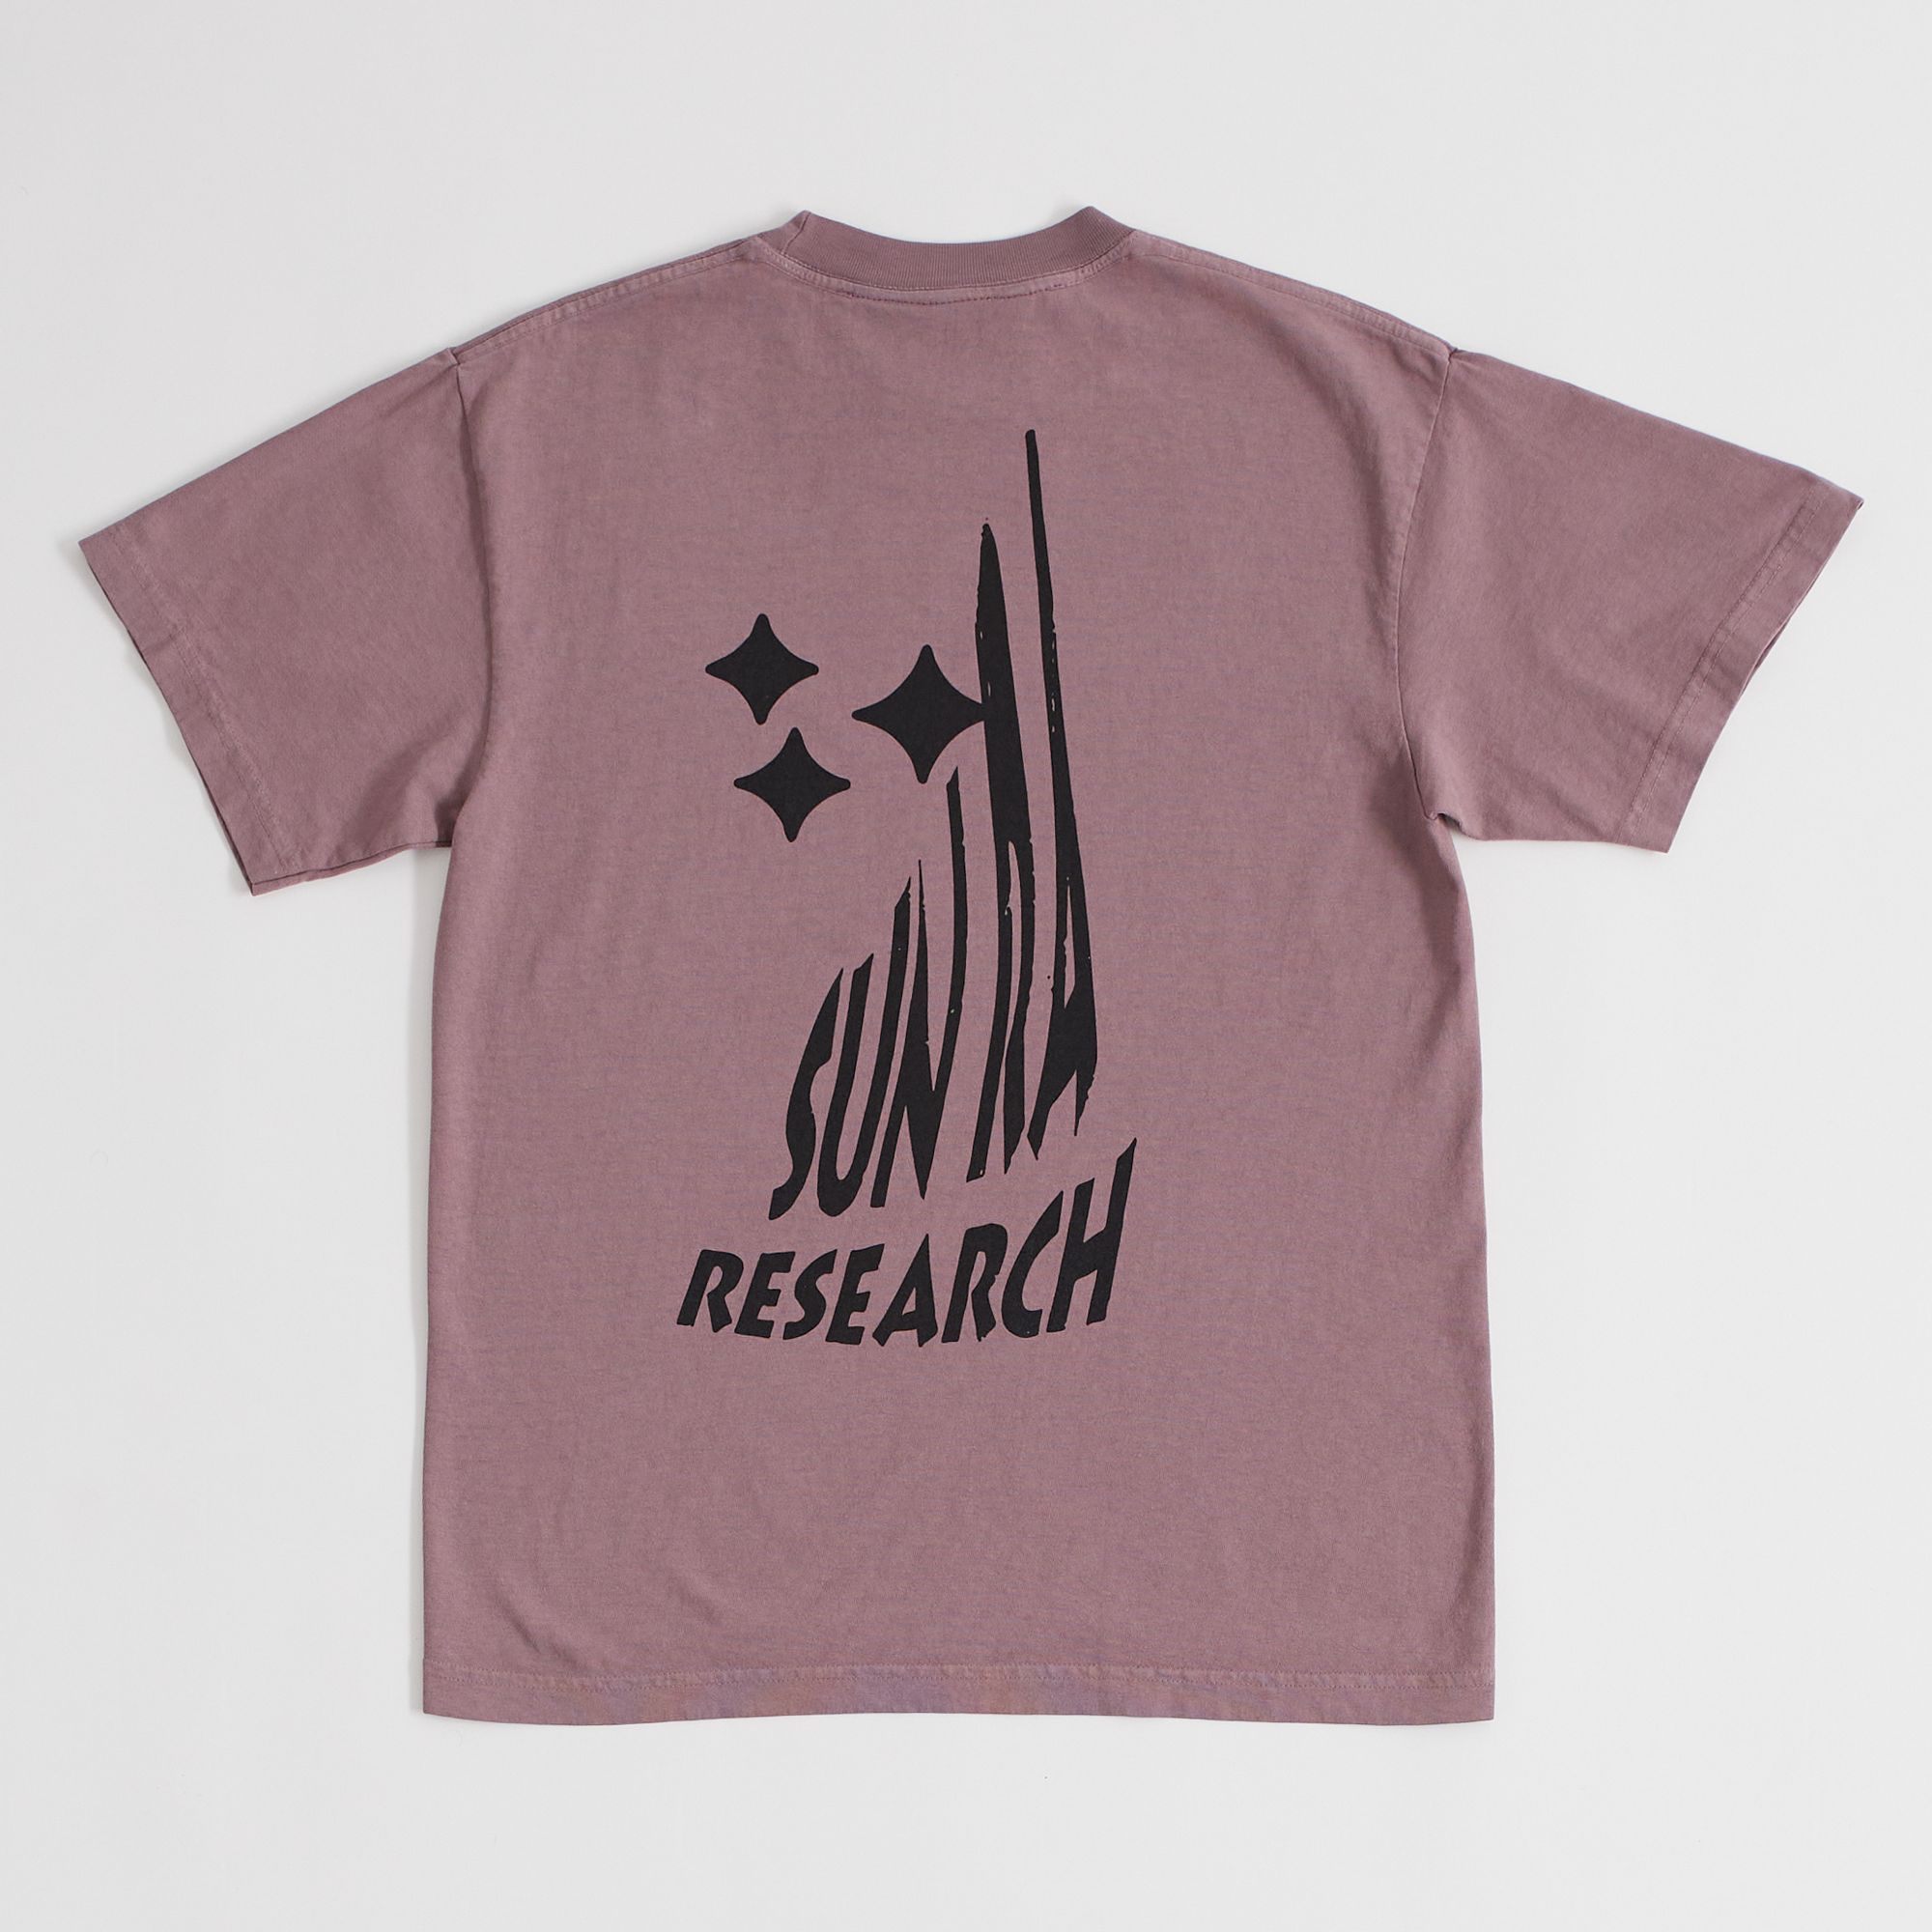 Sun Ra Research S/S T-Shirt (Mauve)